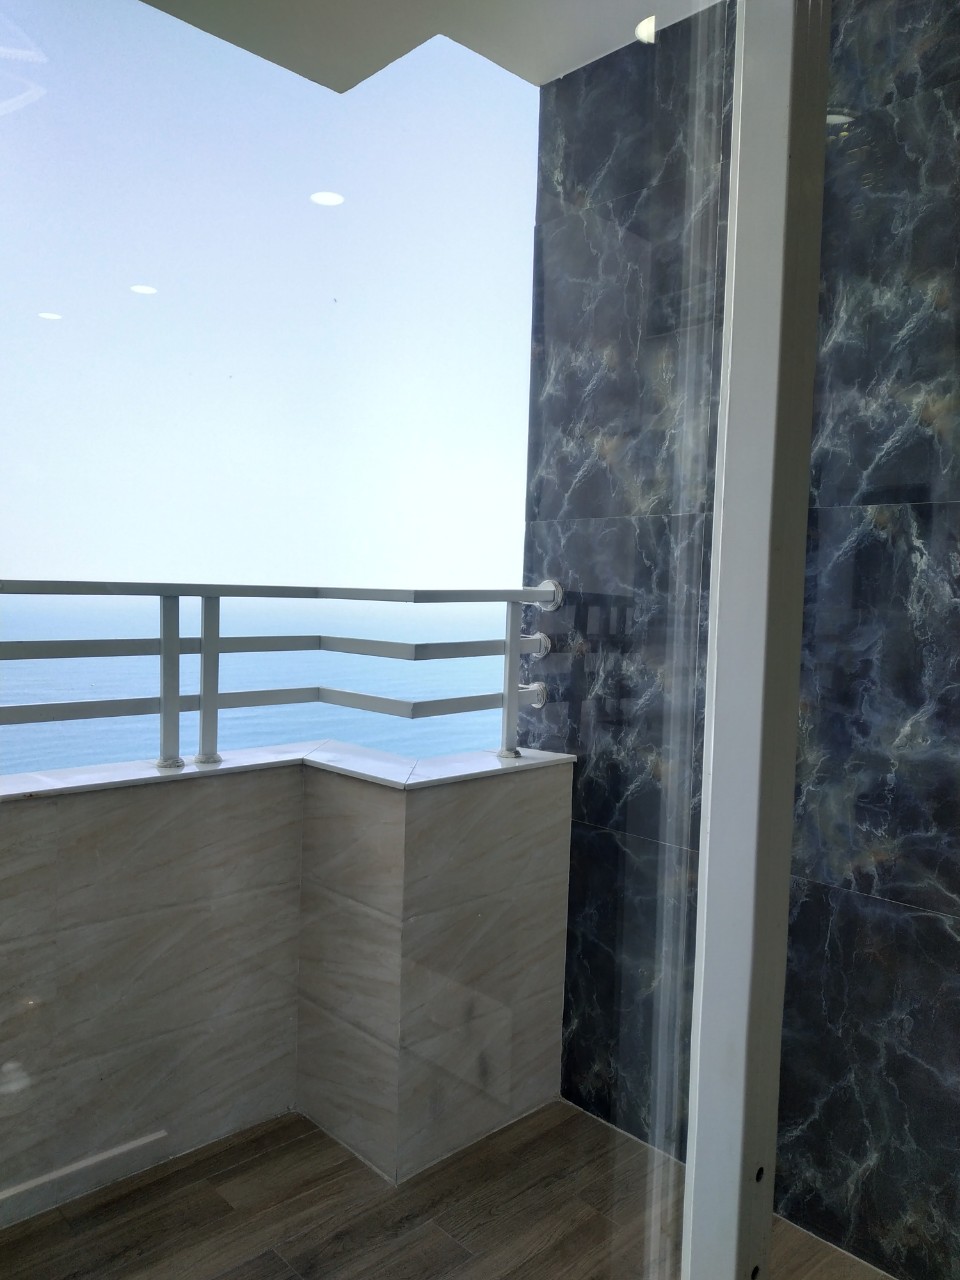 Cho thuê Mường Thanh tầng cao view biển,2PN 66 m2 full nội thất đẹp giá cực rẻ 11 tr/ tháng.LH ngay:0983.750.220